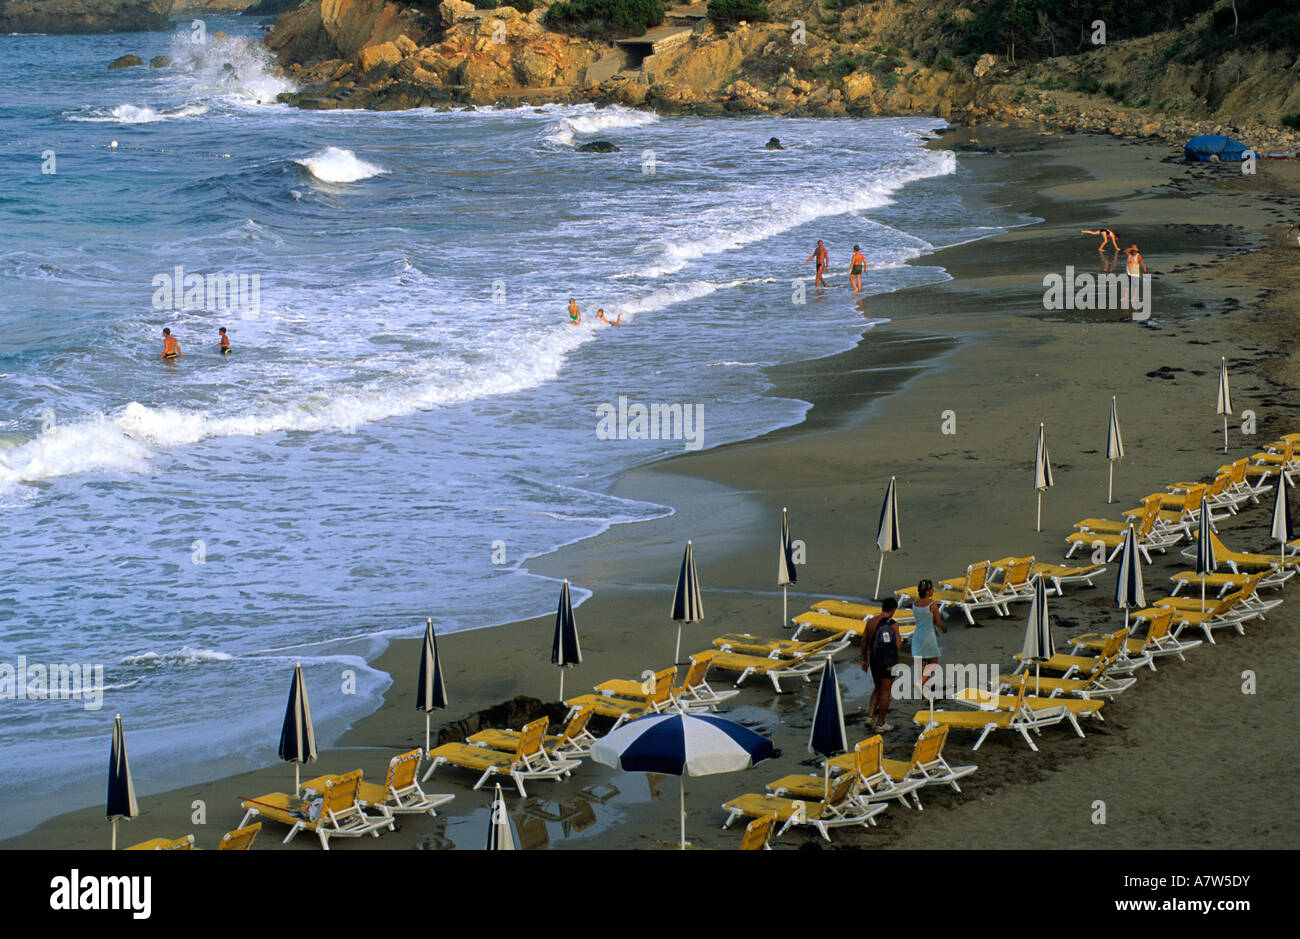 Sedie a sdraio in d spiaggia di Es Figueral Ibiza Isole Baleari Spagna Foto Stock